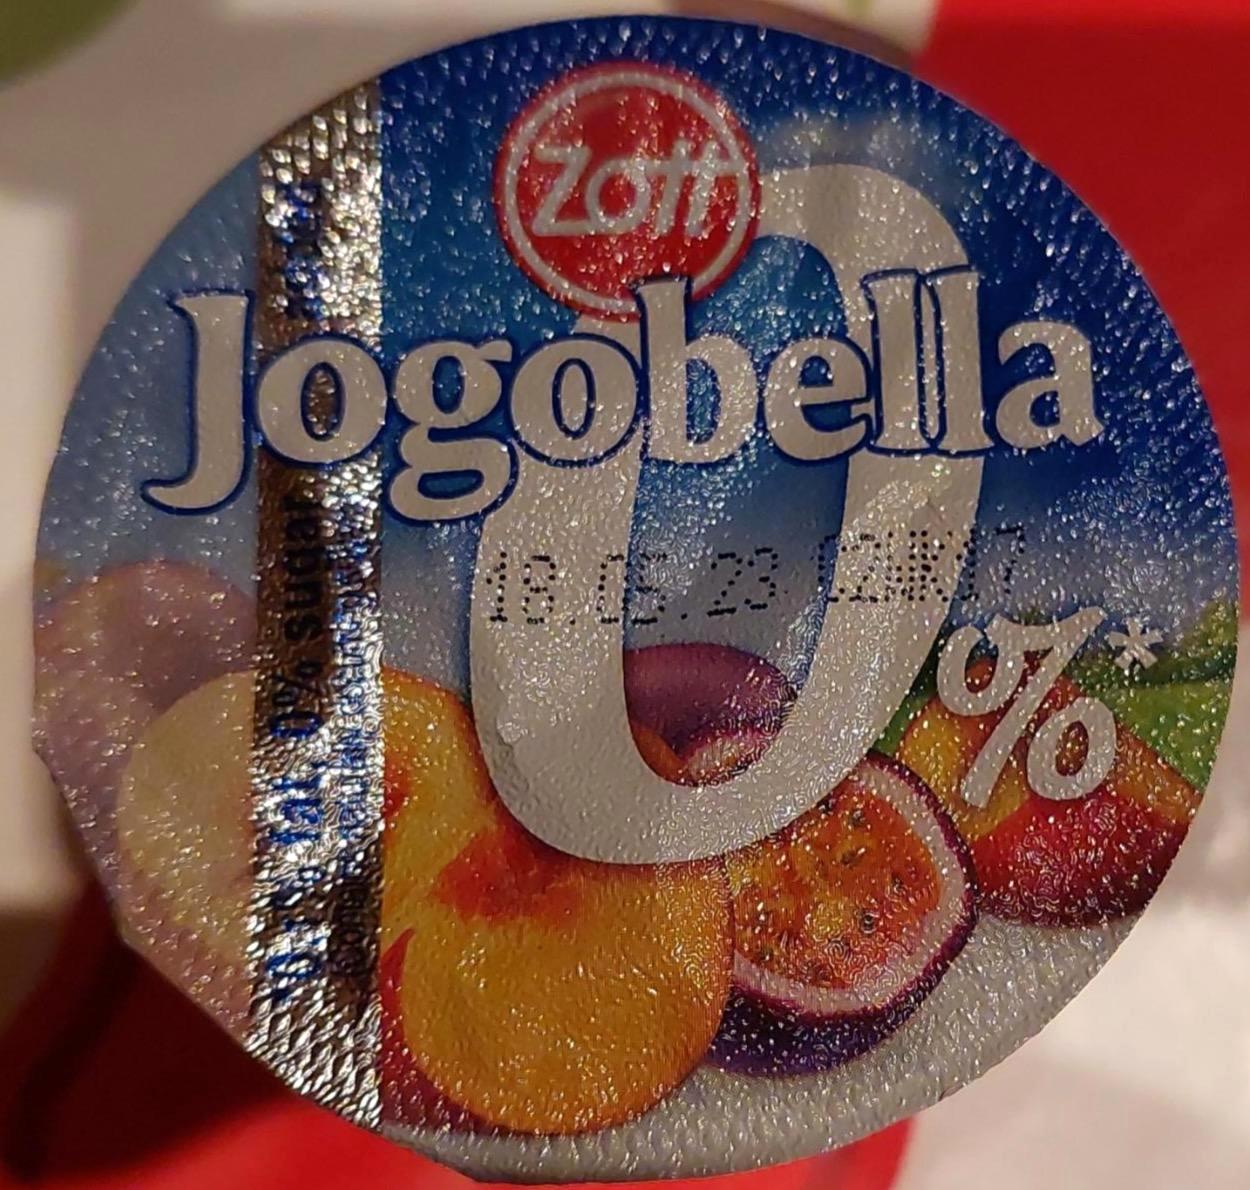 Képek - Jogobella 0% őszibarack és maracuja Zott